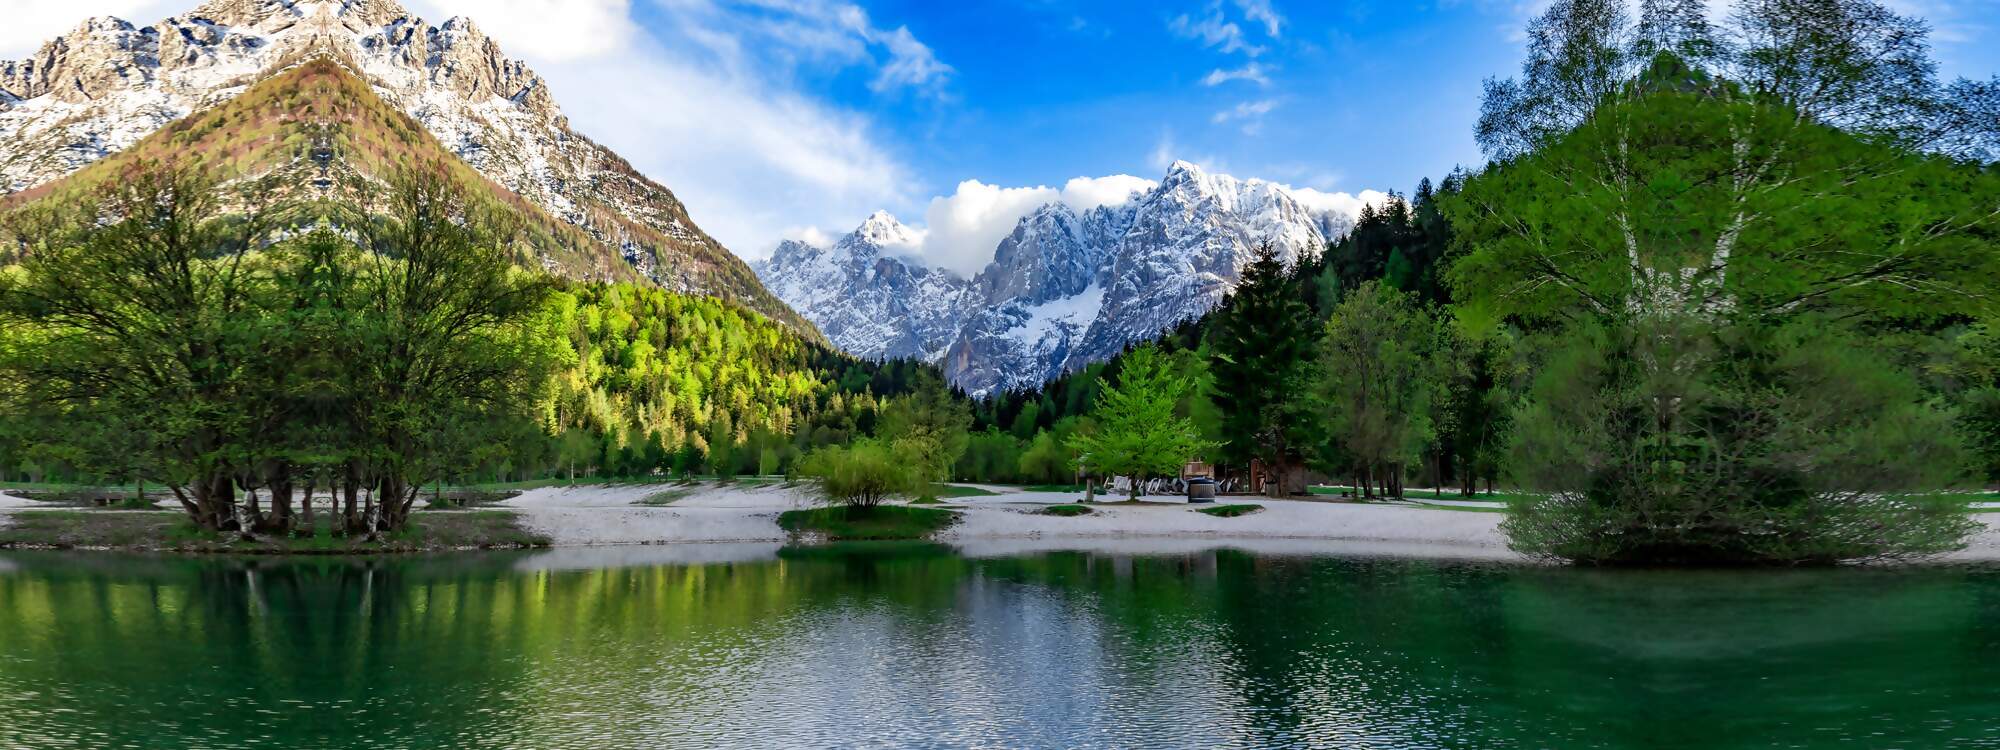 Der Julian Alps Triglav Nationalpark in Slowenien